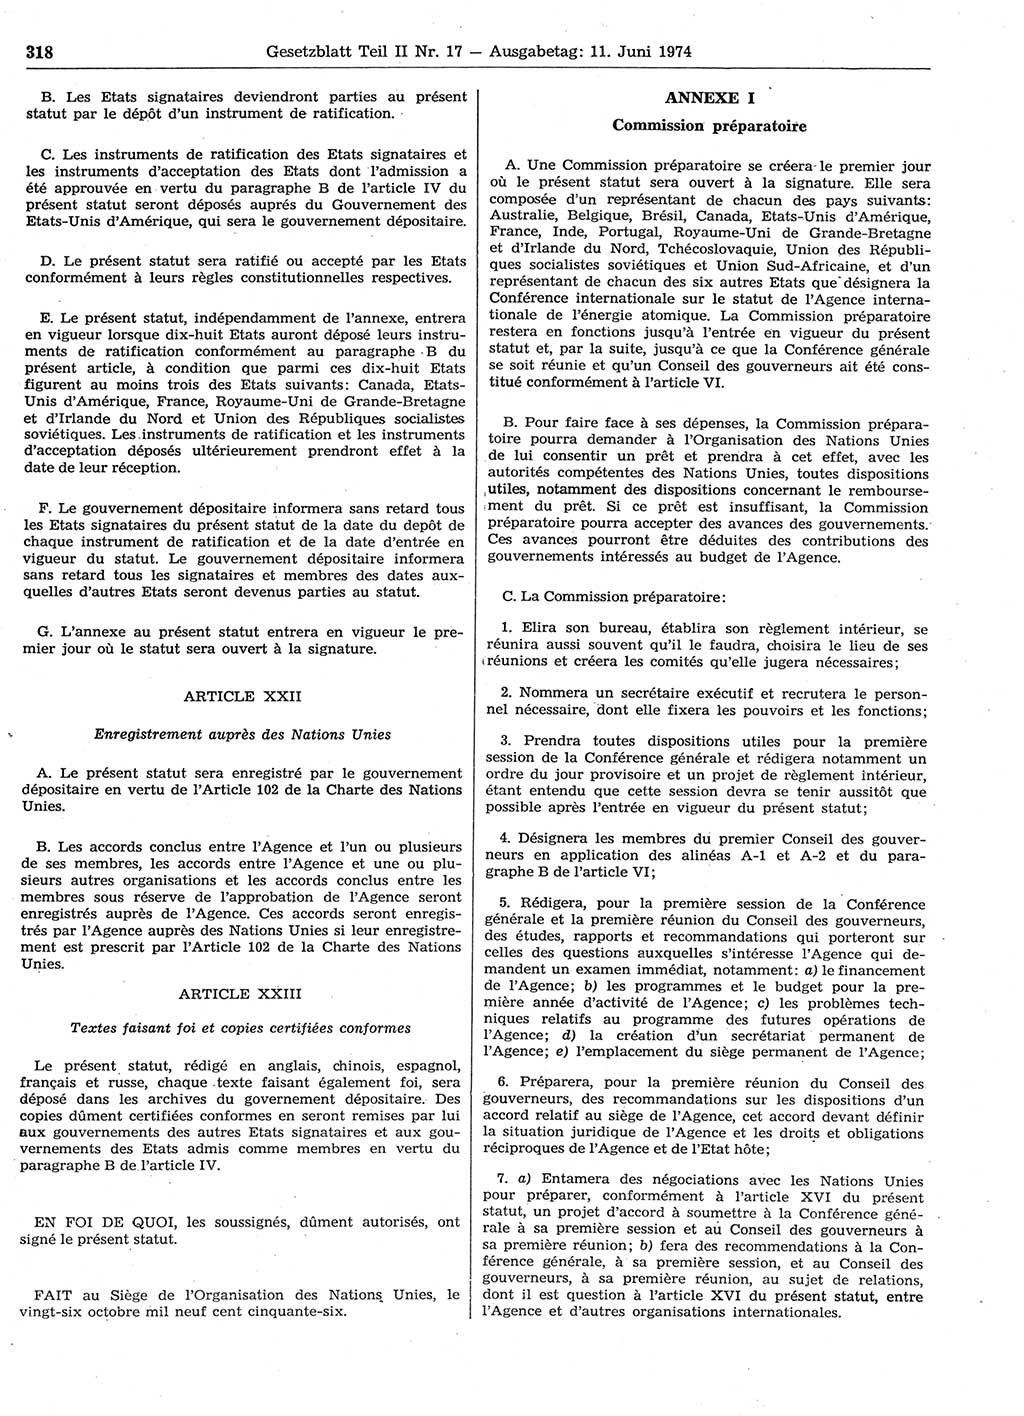 Gesetzblatt (GBl.) der Deutschen Demokratischen Republik (DDR) Teil ⅠⅠ 1974, Seite 318 (GBl. DDR ⅠⅠ 1974, S. 318)